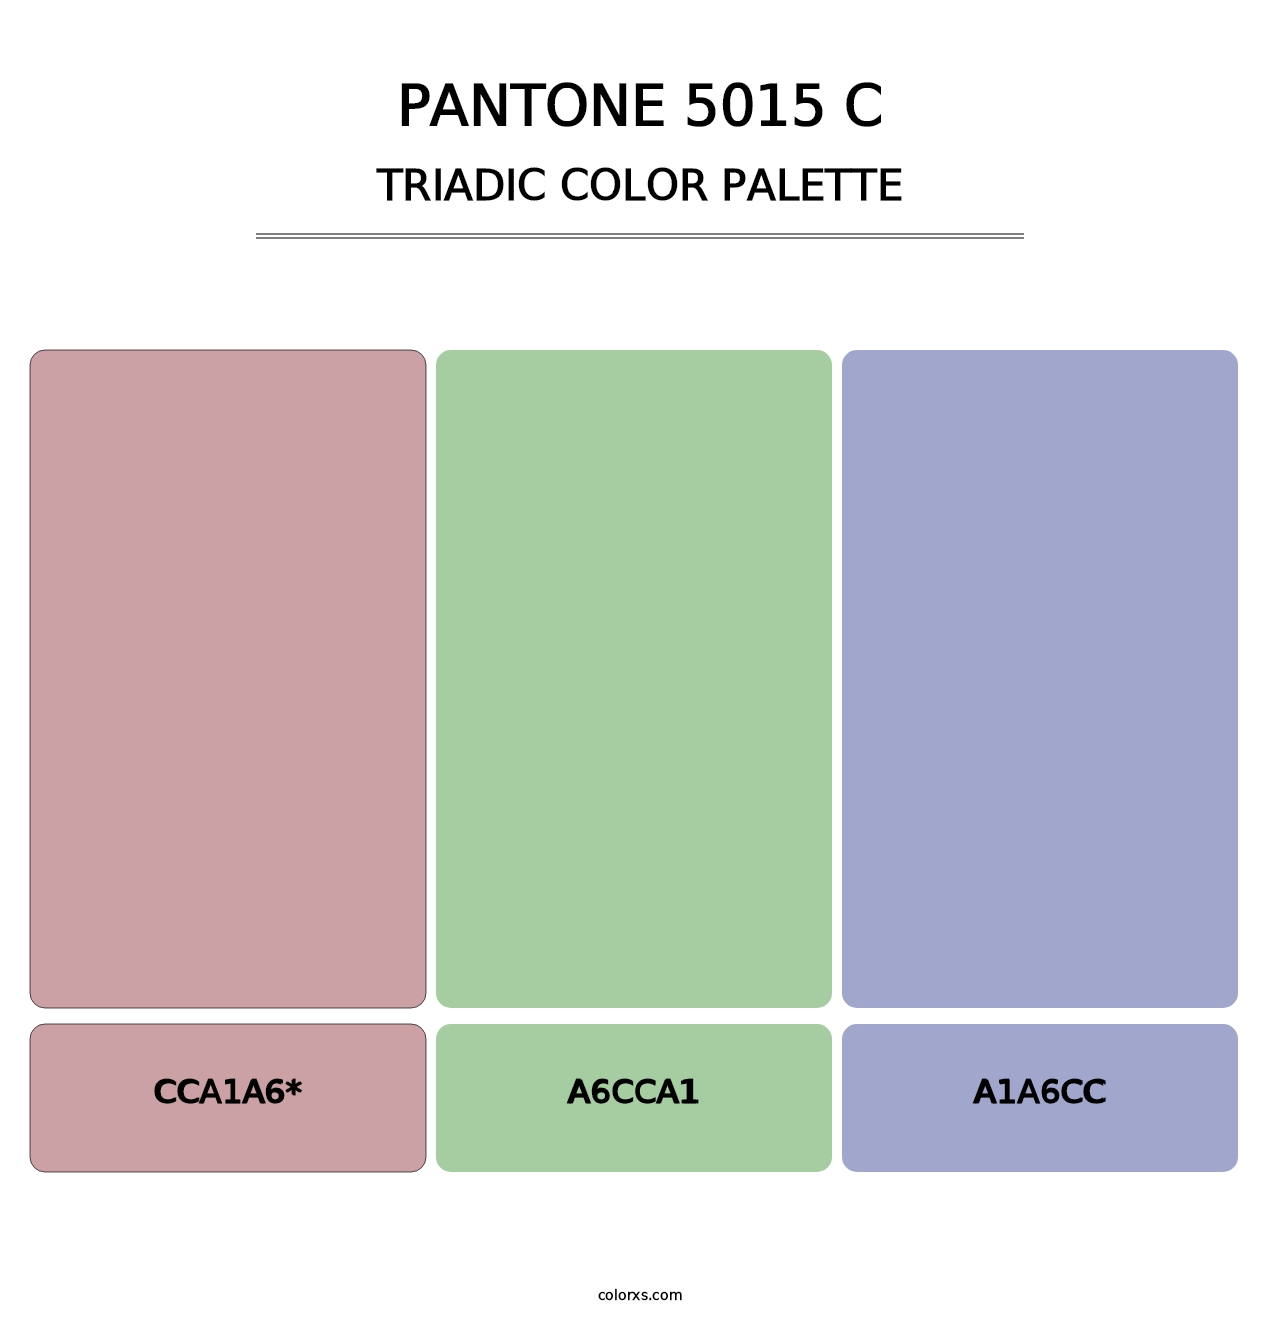 PANTONE 5015 C - Triadic Color Palette